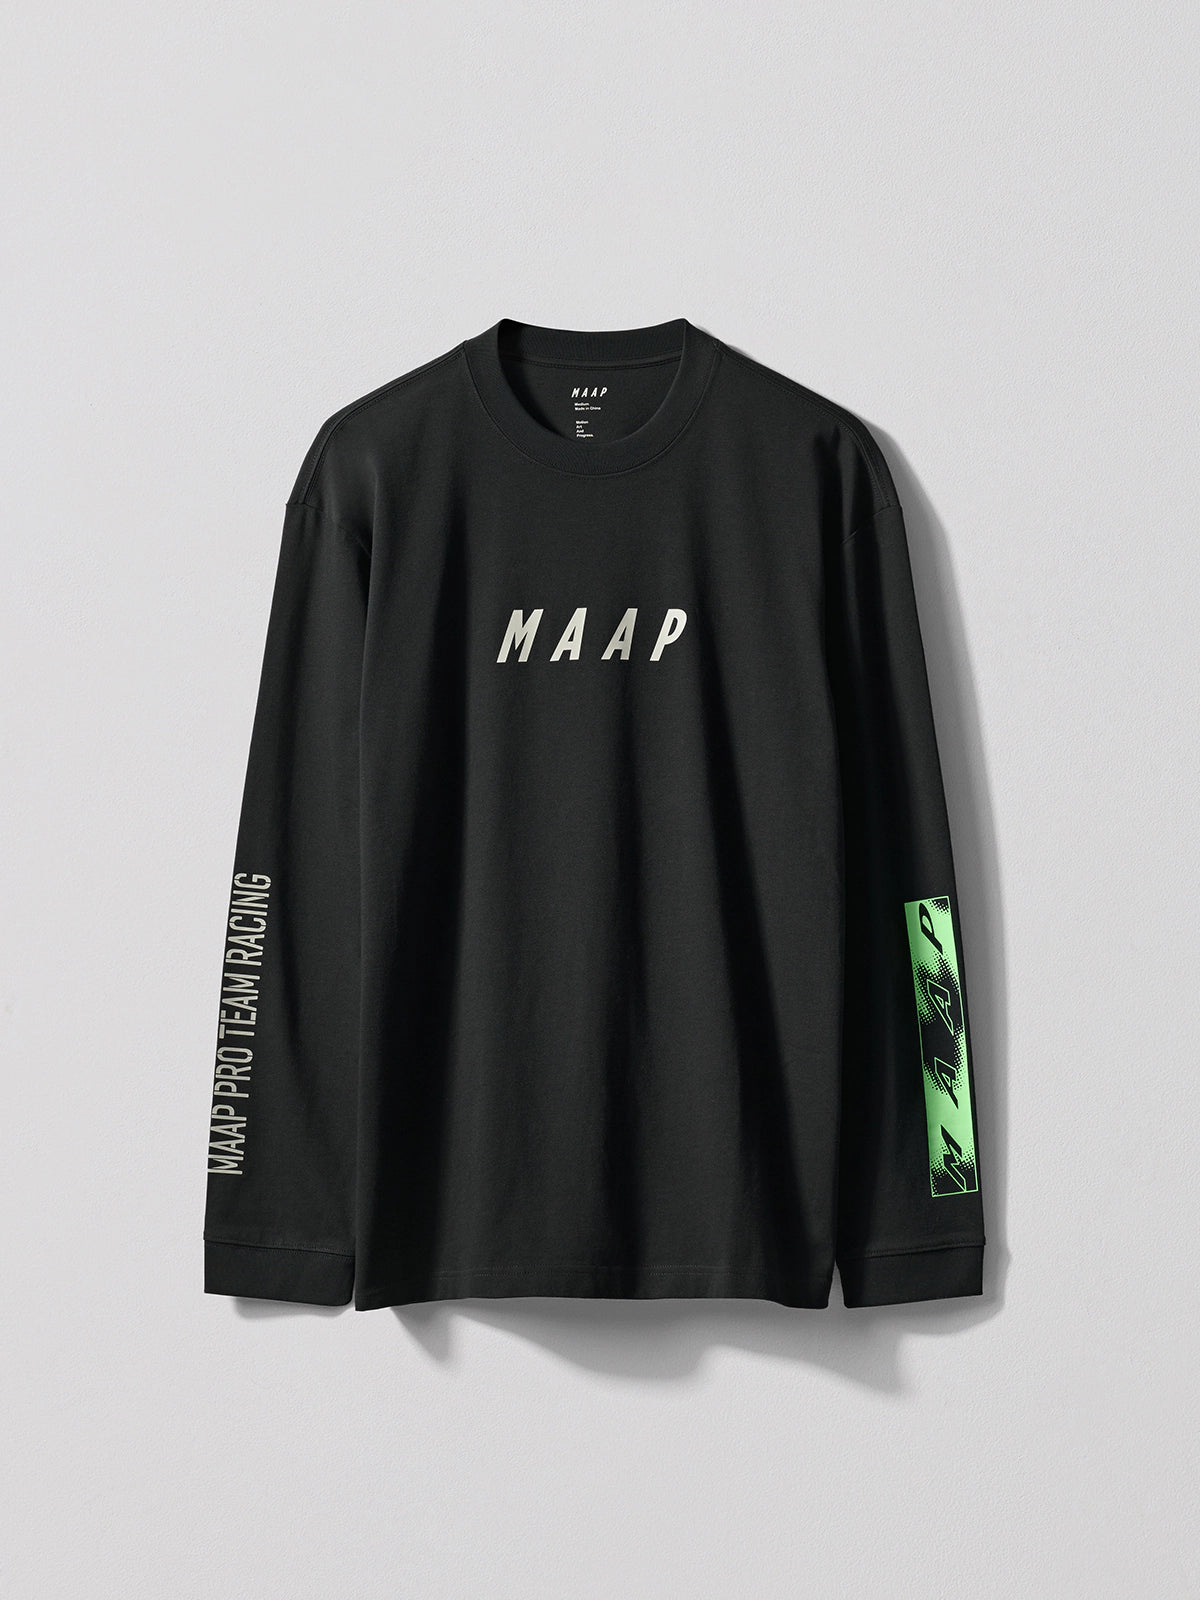 MAAP Lifeplus-Wahoo Replica ロングスリーブ Tシャツ | CYCLISM